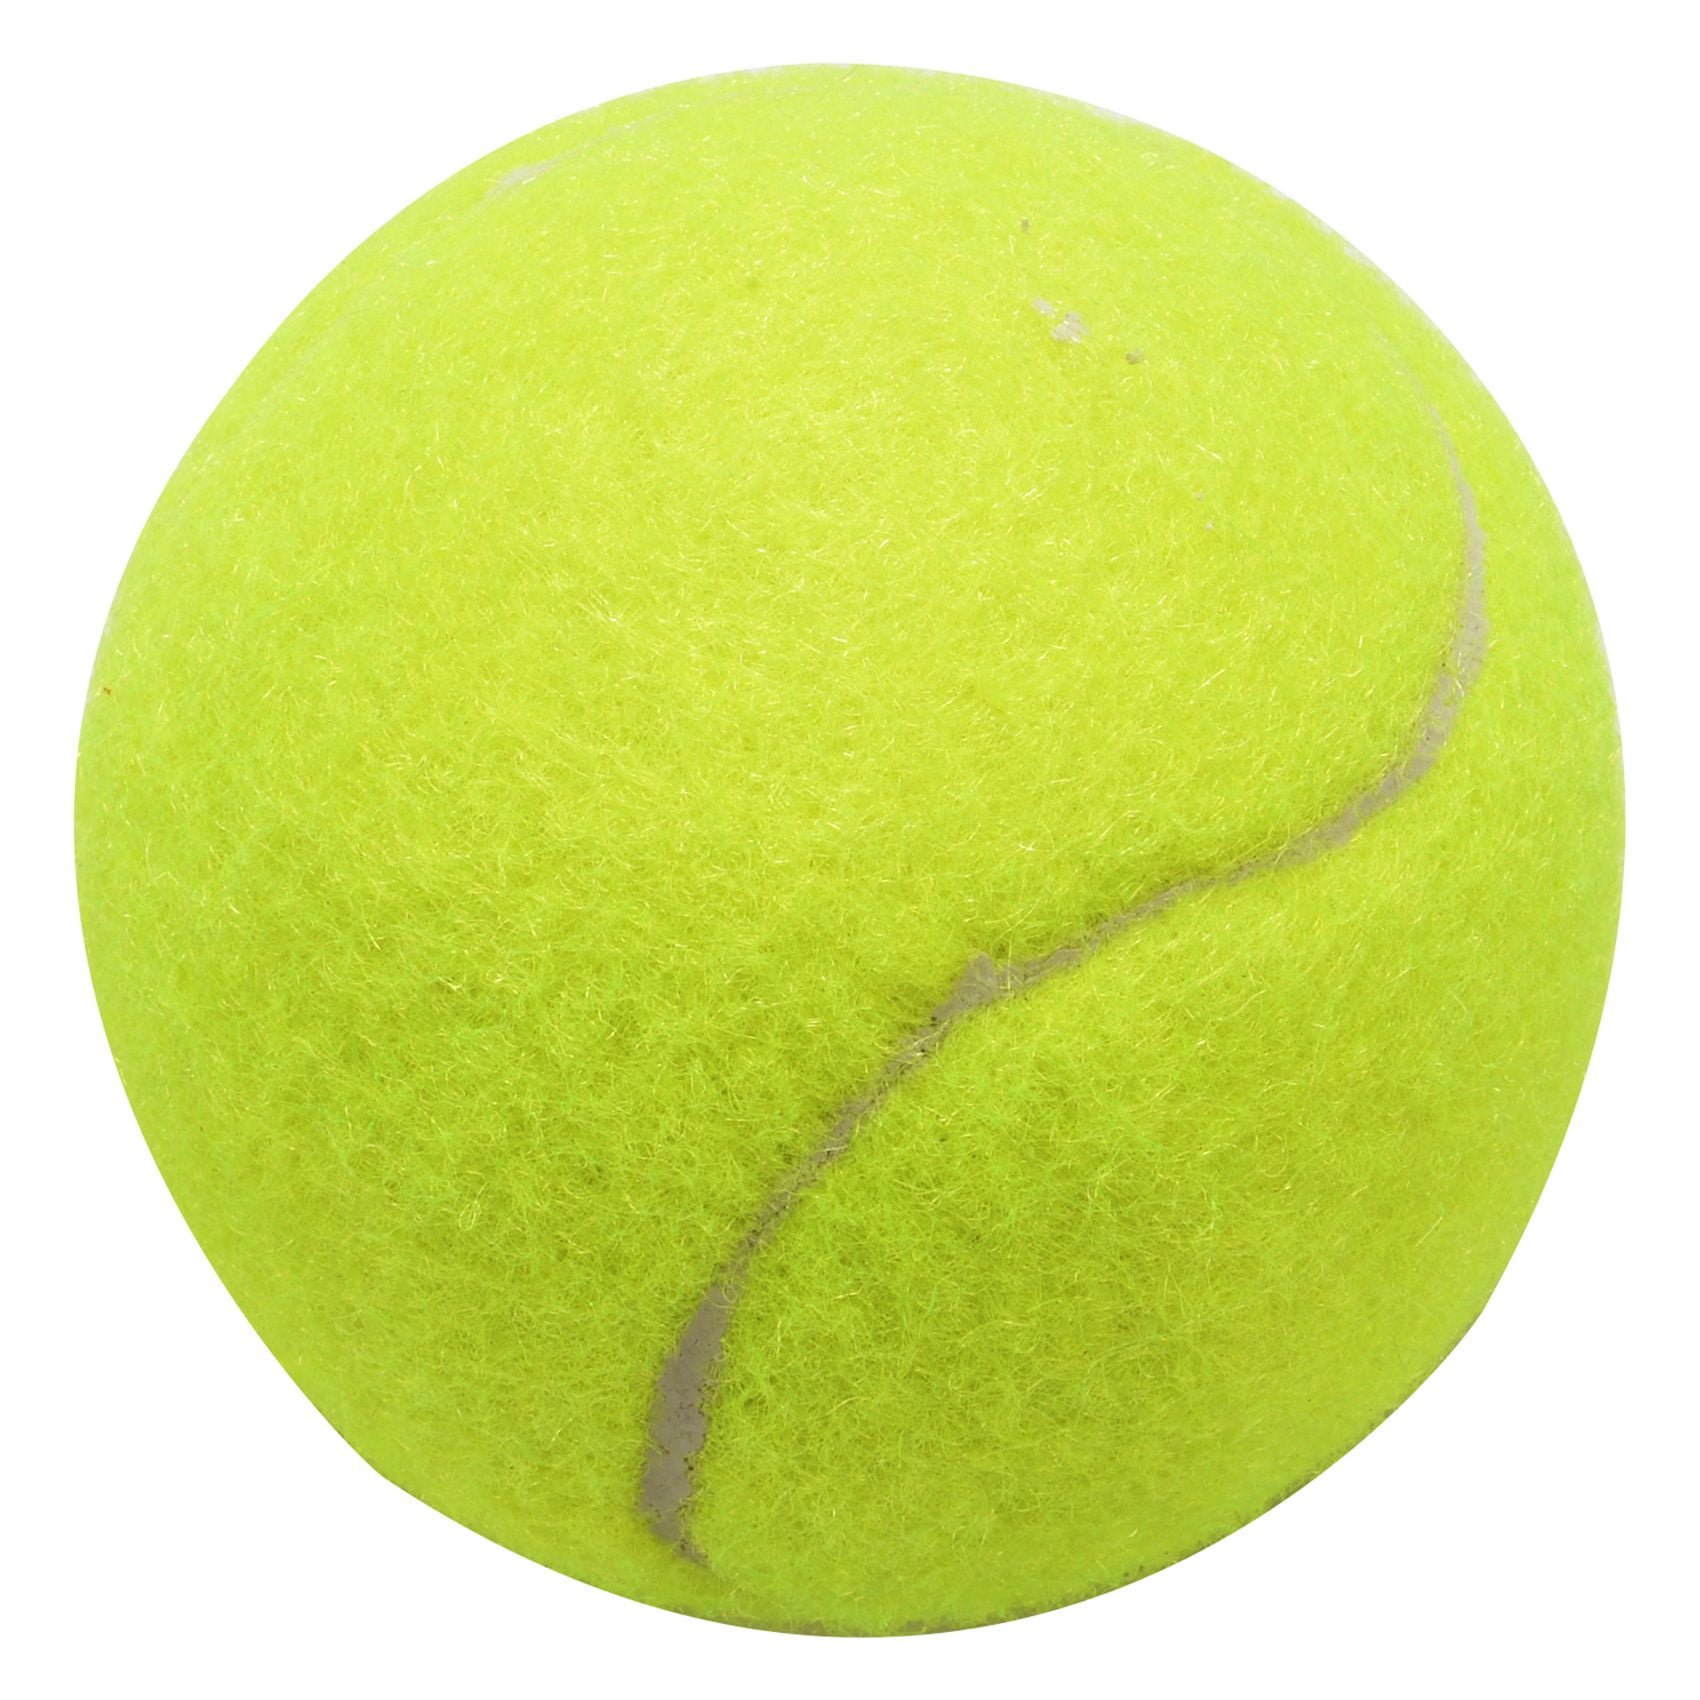 Pet Tennis Ball Sports Tournament Outdoor Fun Cricket Beach Dog Activity-2018 